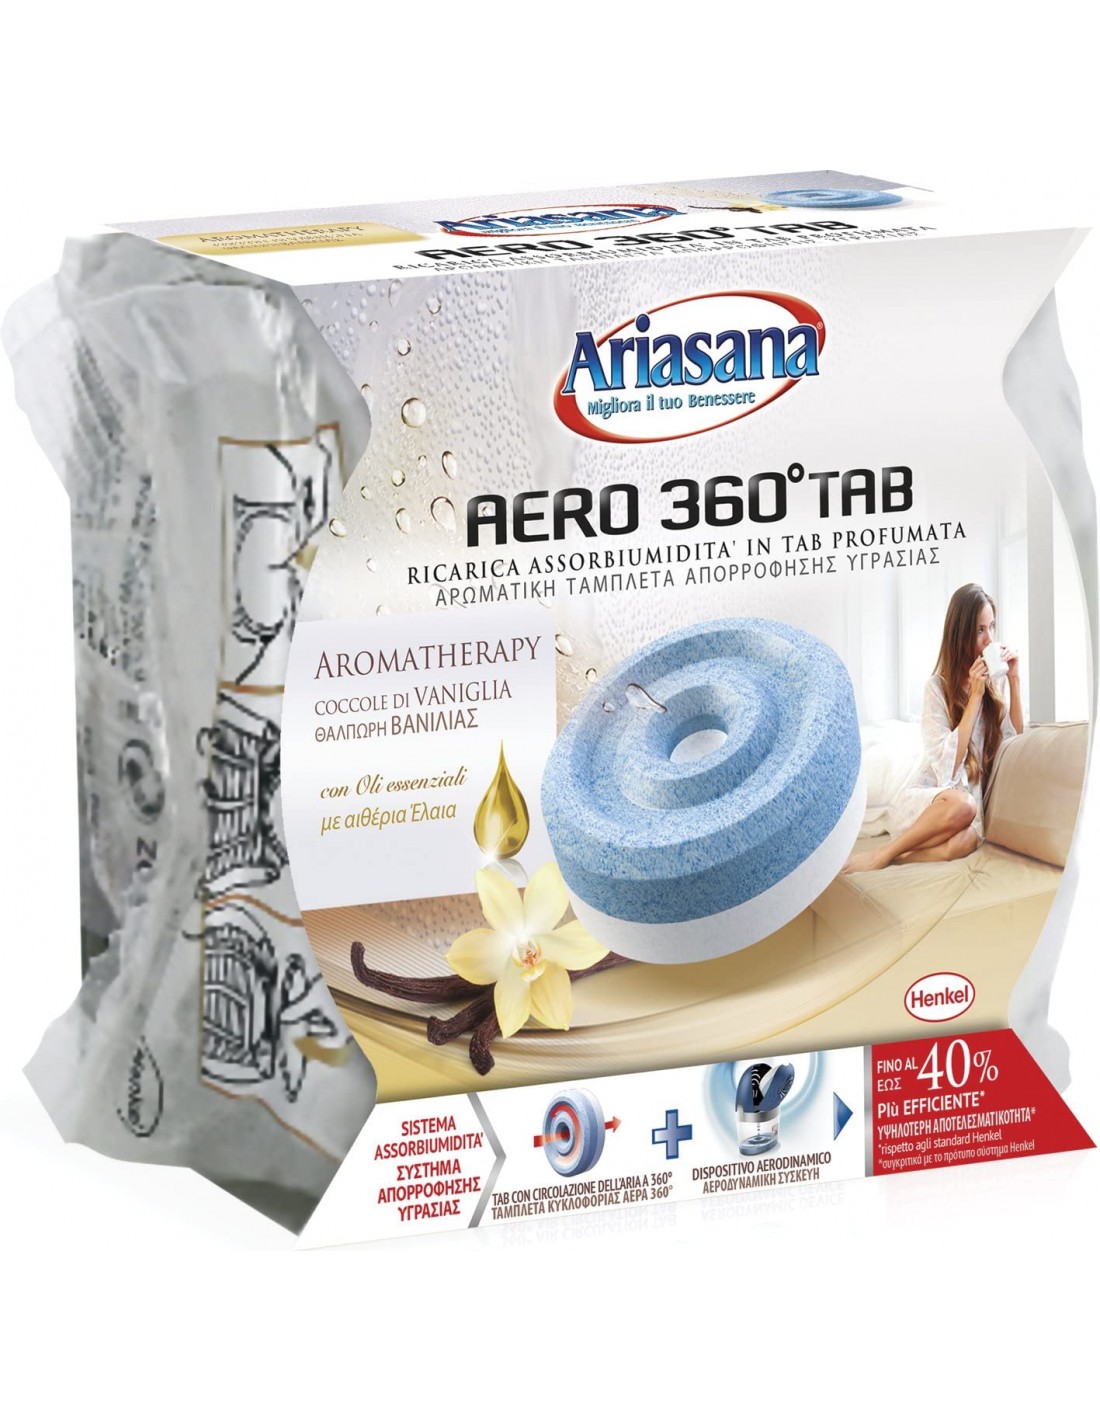 Ariasana Aero 360° kit assorbiumidità, deumidificatore ricaricabile non  elettrico, assorbi umidità contro condensa e muffa, 1 dispositivo e 1 ricarica  Tab lavanda da 450g